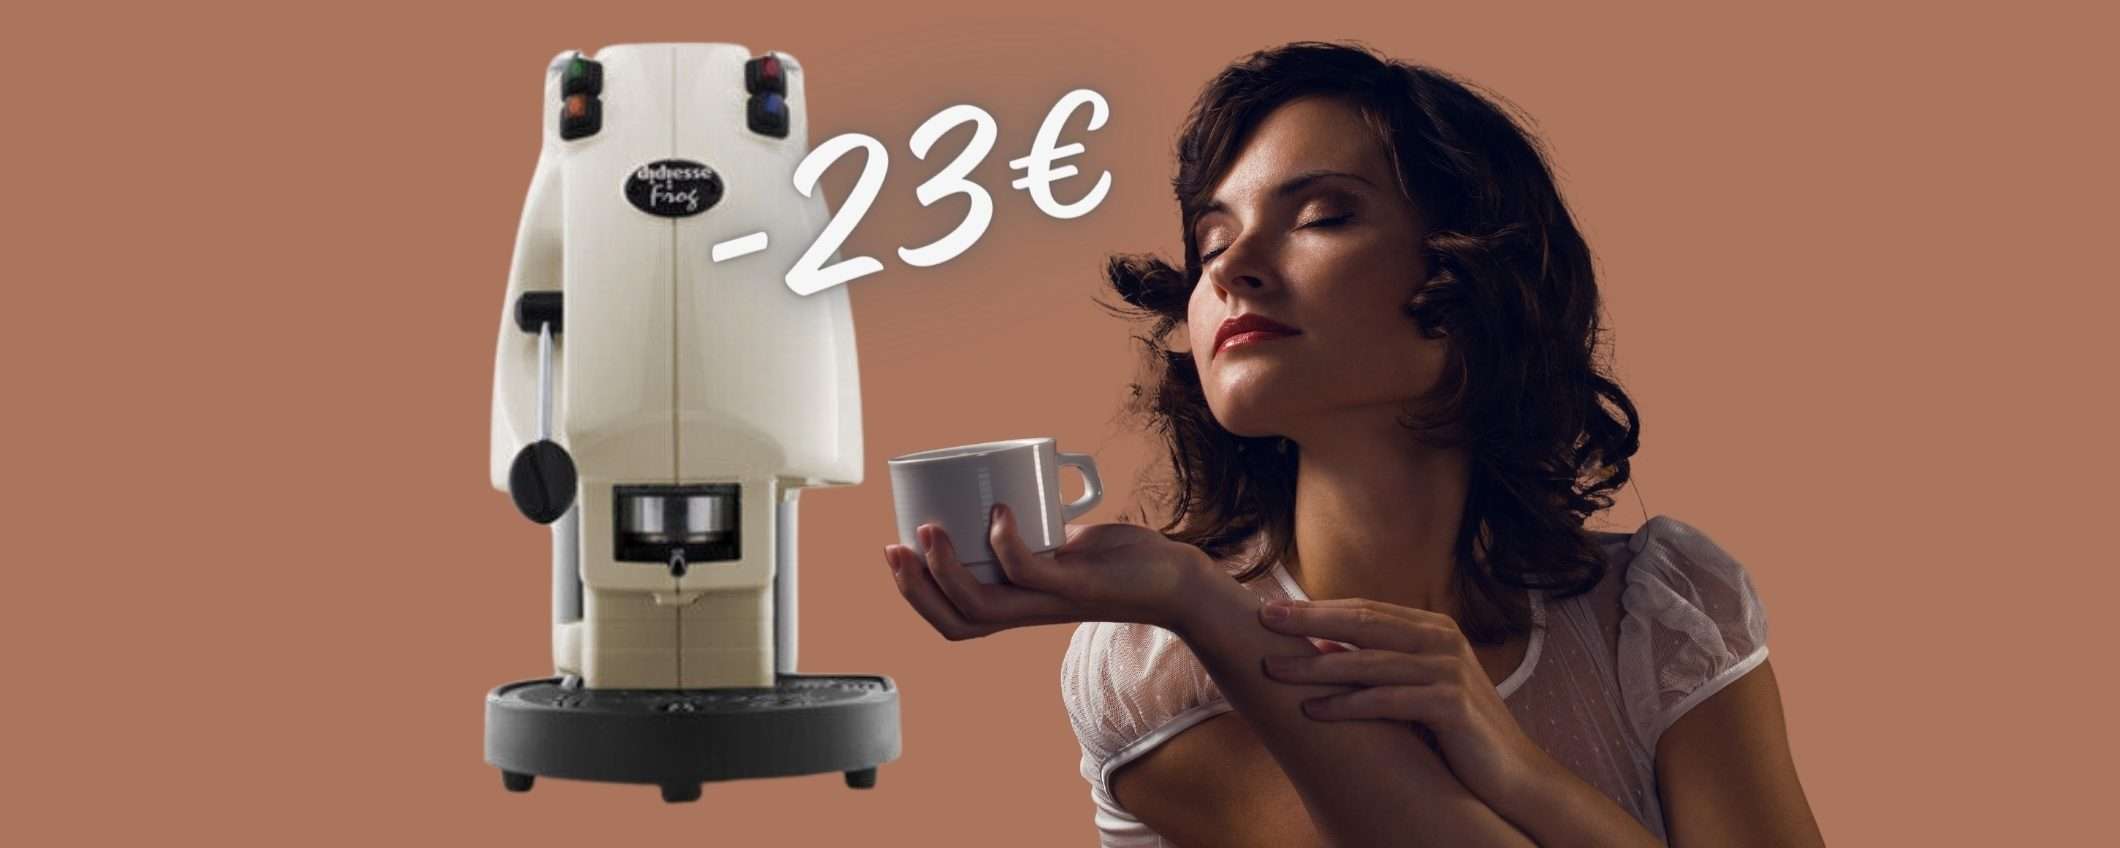 Didiesse Frog Revolution: EPICA macchina per caffè a OTTIMO PREZZO